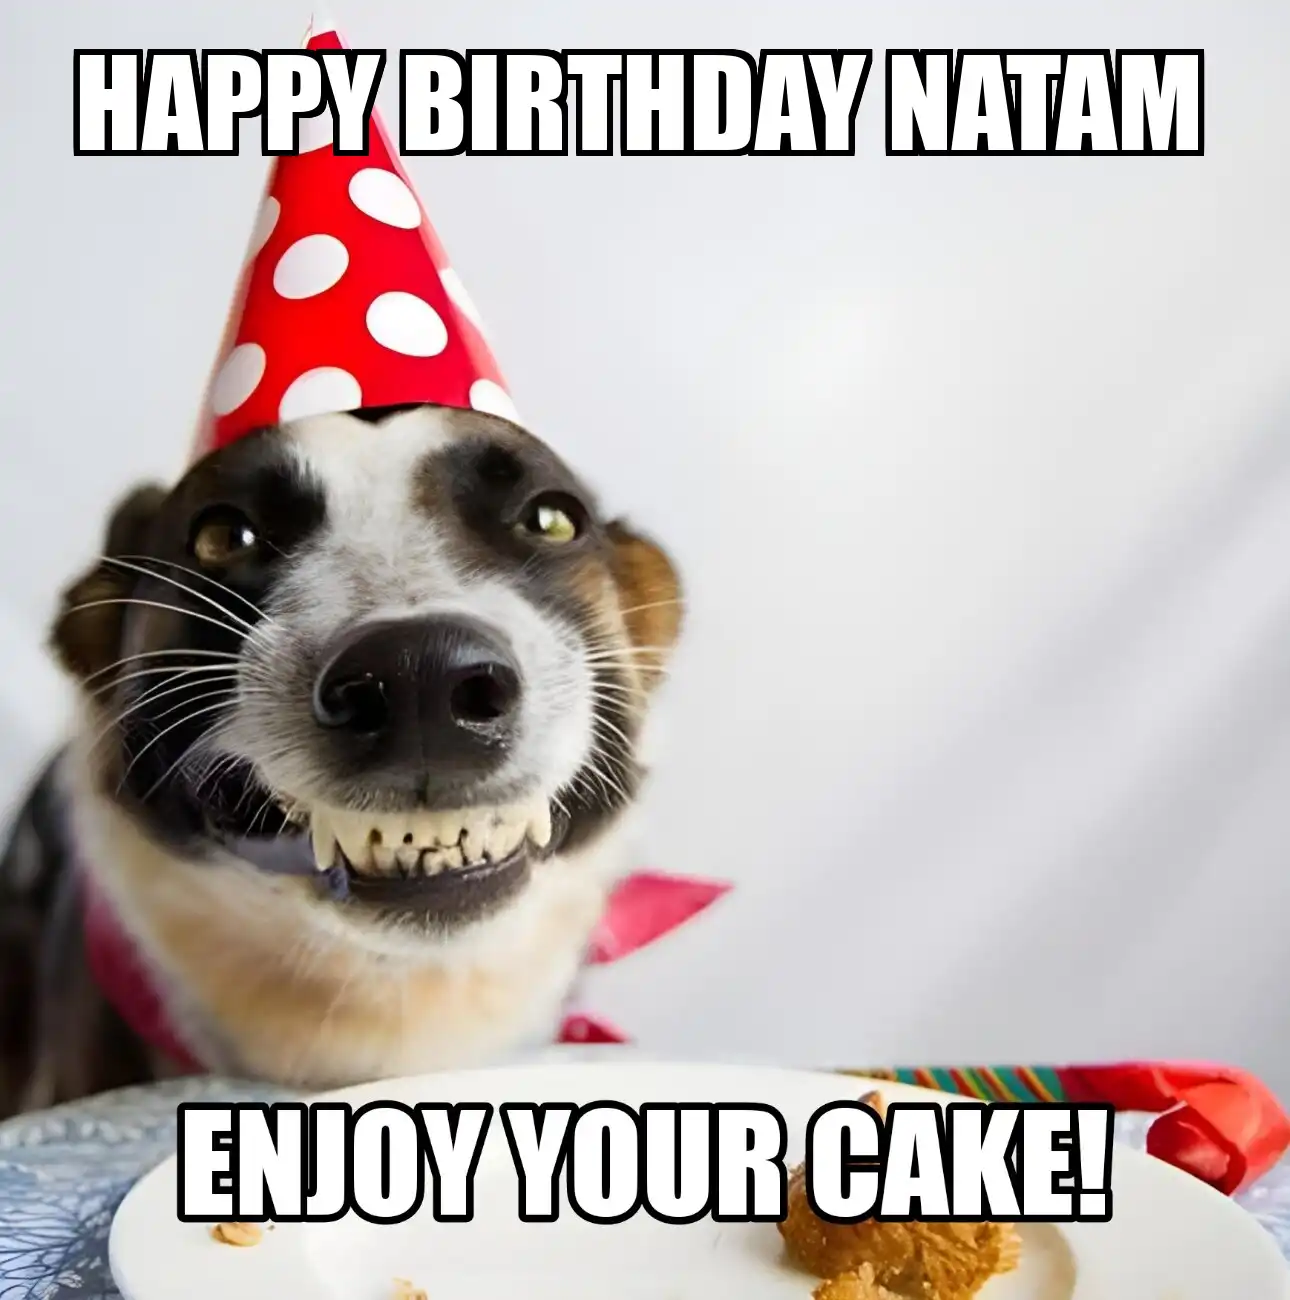 Happy Birthday Natam Enjoy Your Cake Dog Meme